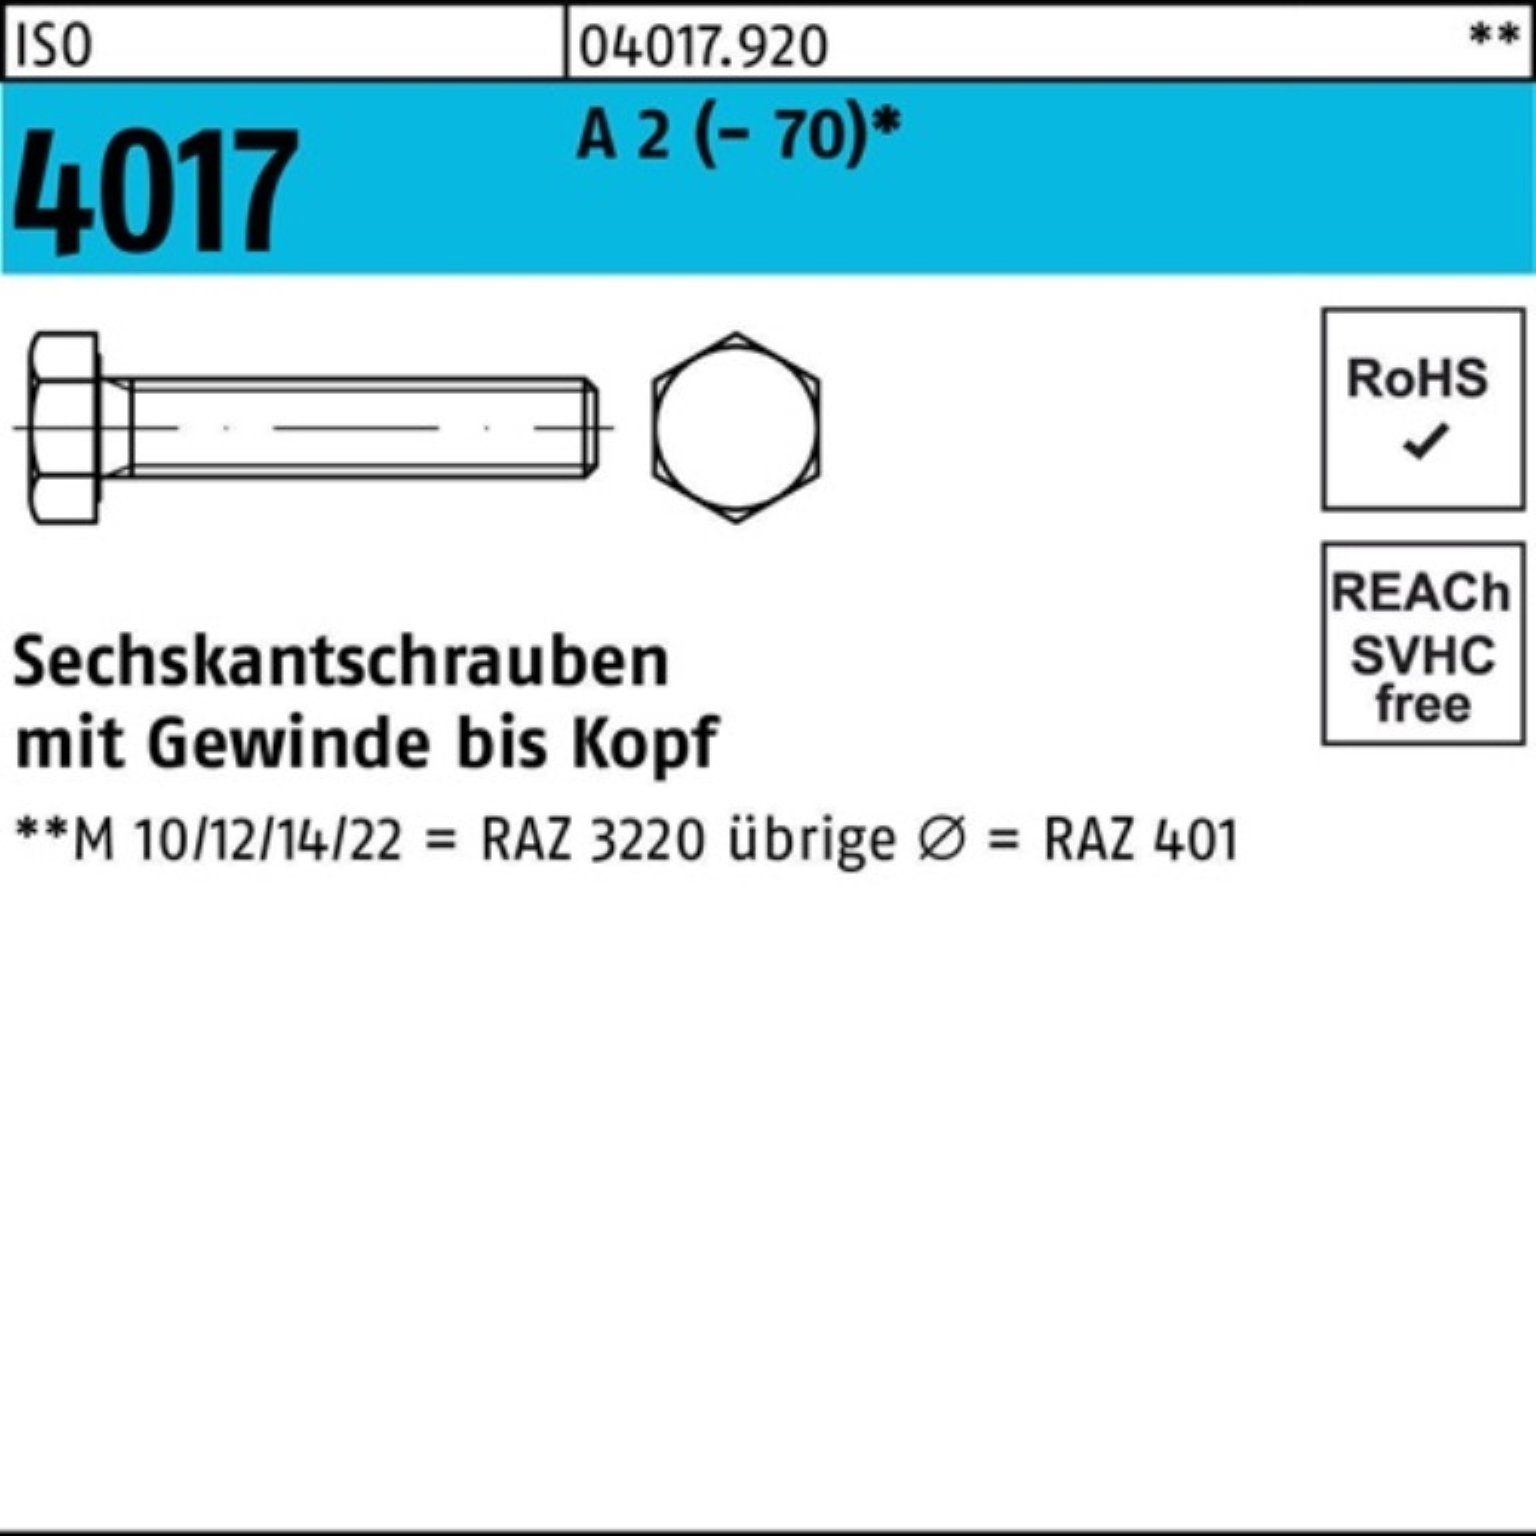 Bufab Sechskantschraube 100er 10 170 4017 Pack A M20x 2 (70) ISO VG Stück Sechskantschraube